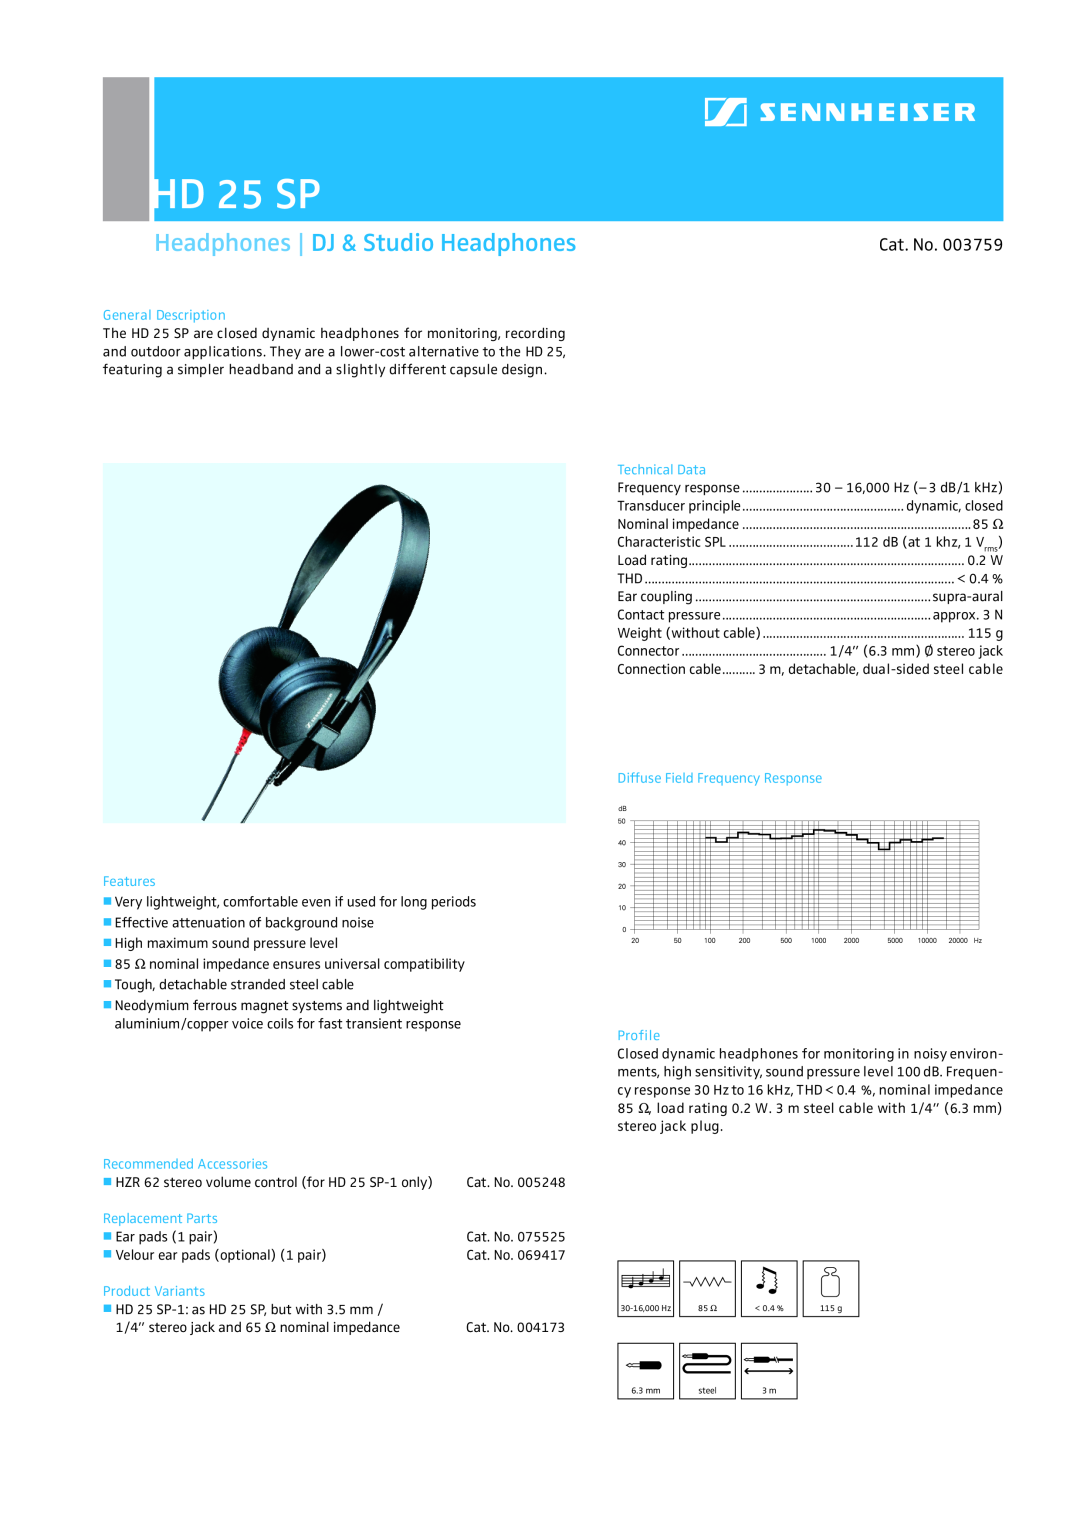 Sennheiser HD 25SP manual HD 25 SP, Headphones DJ & Studio Headphones, Cat. No, General Description, Features 